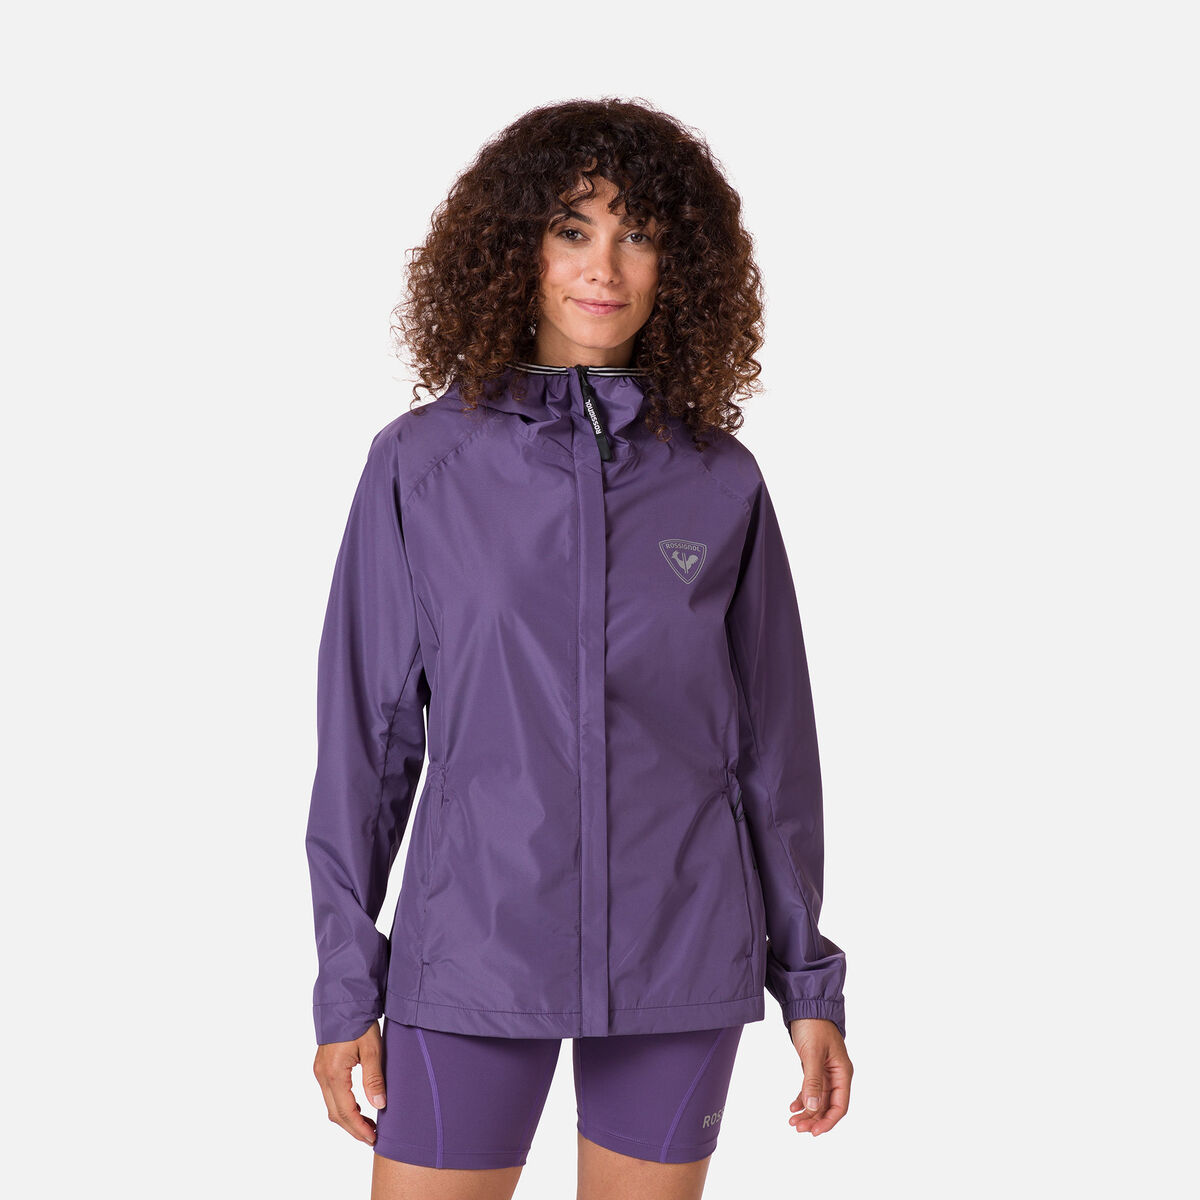 Rossignol Women's Active Rain Jacket Pink/Purple